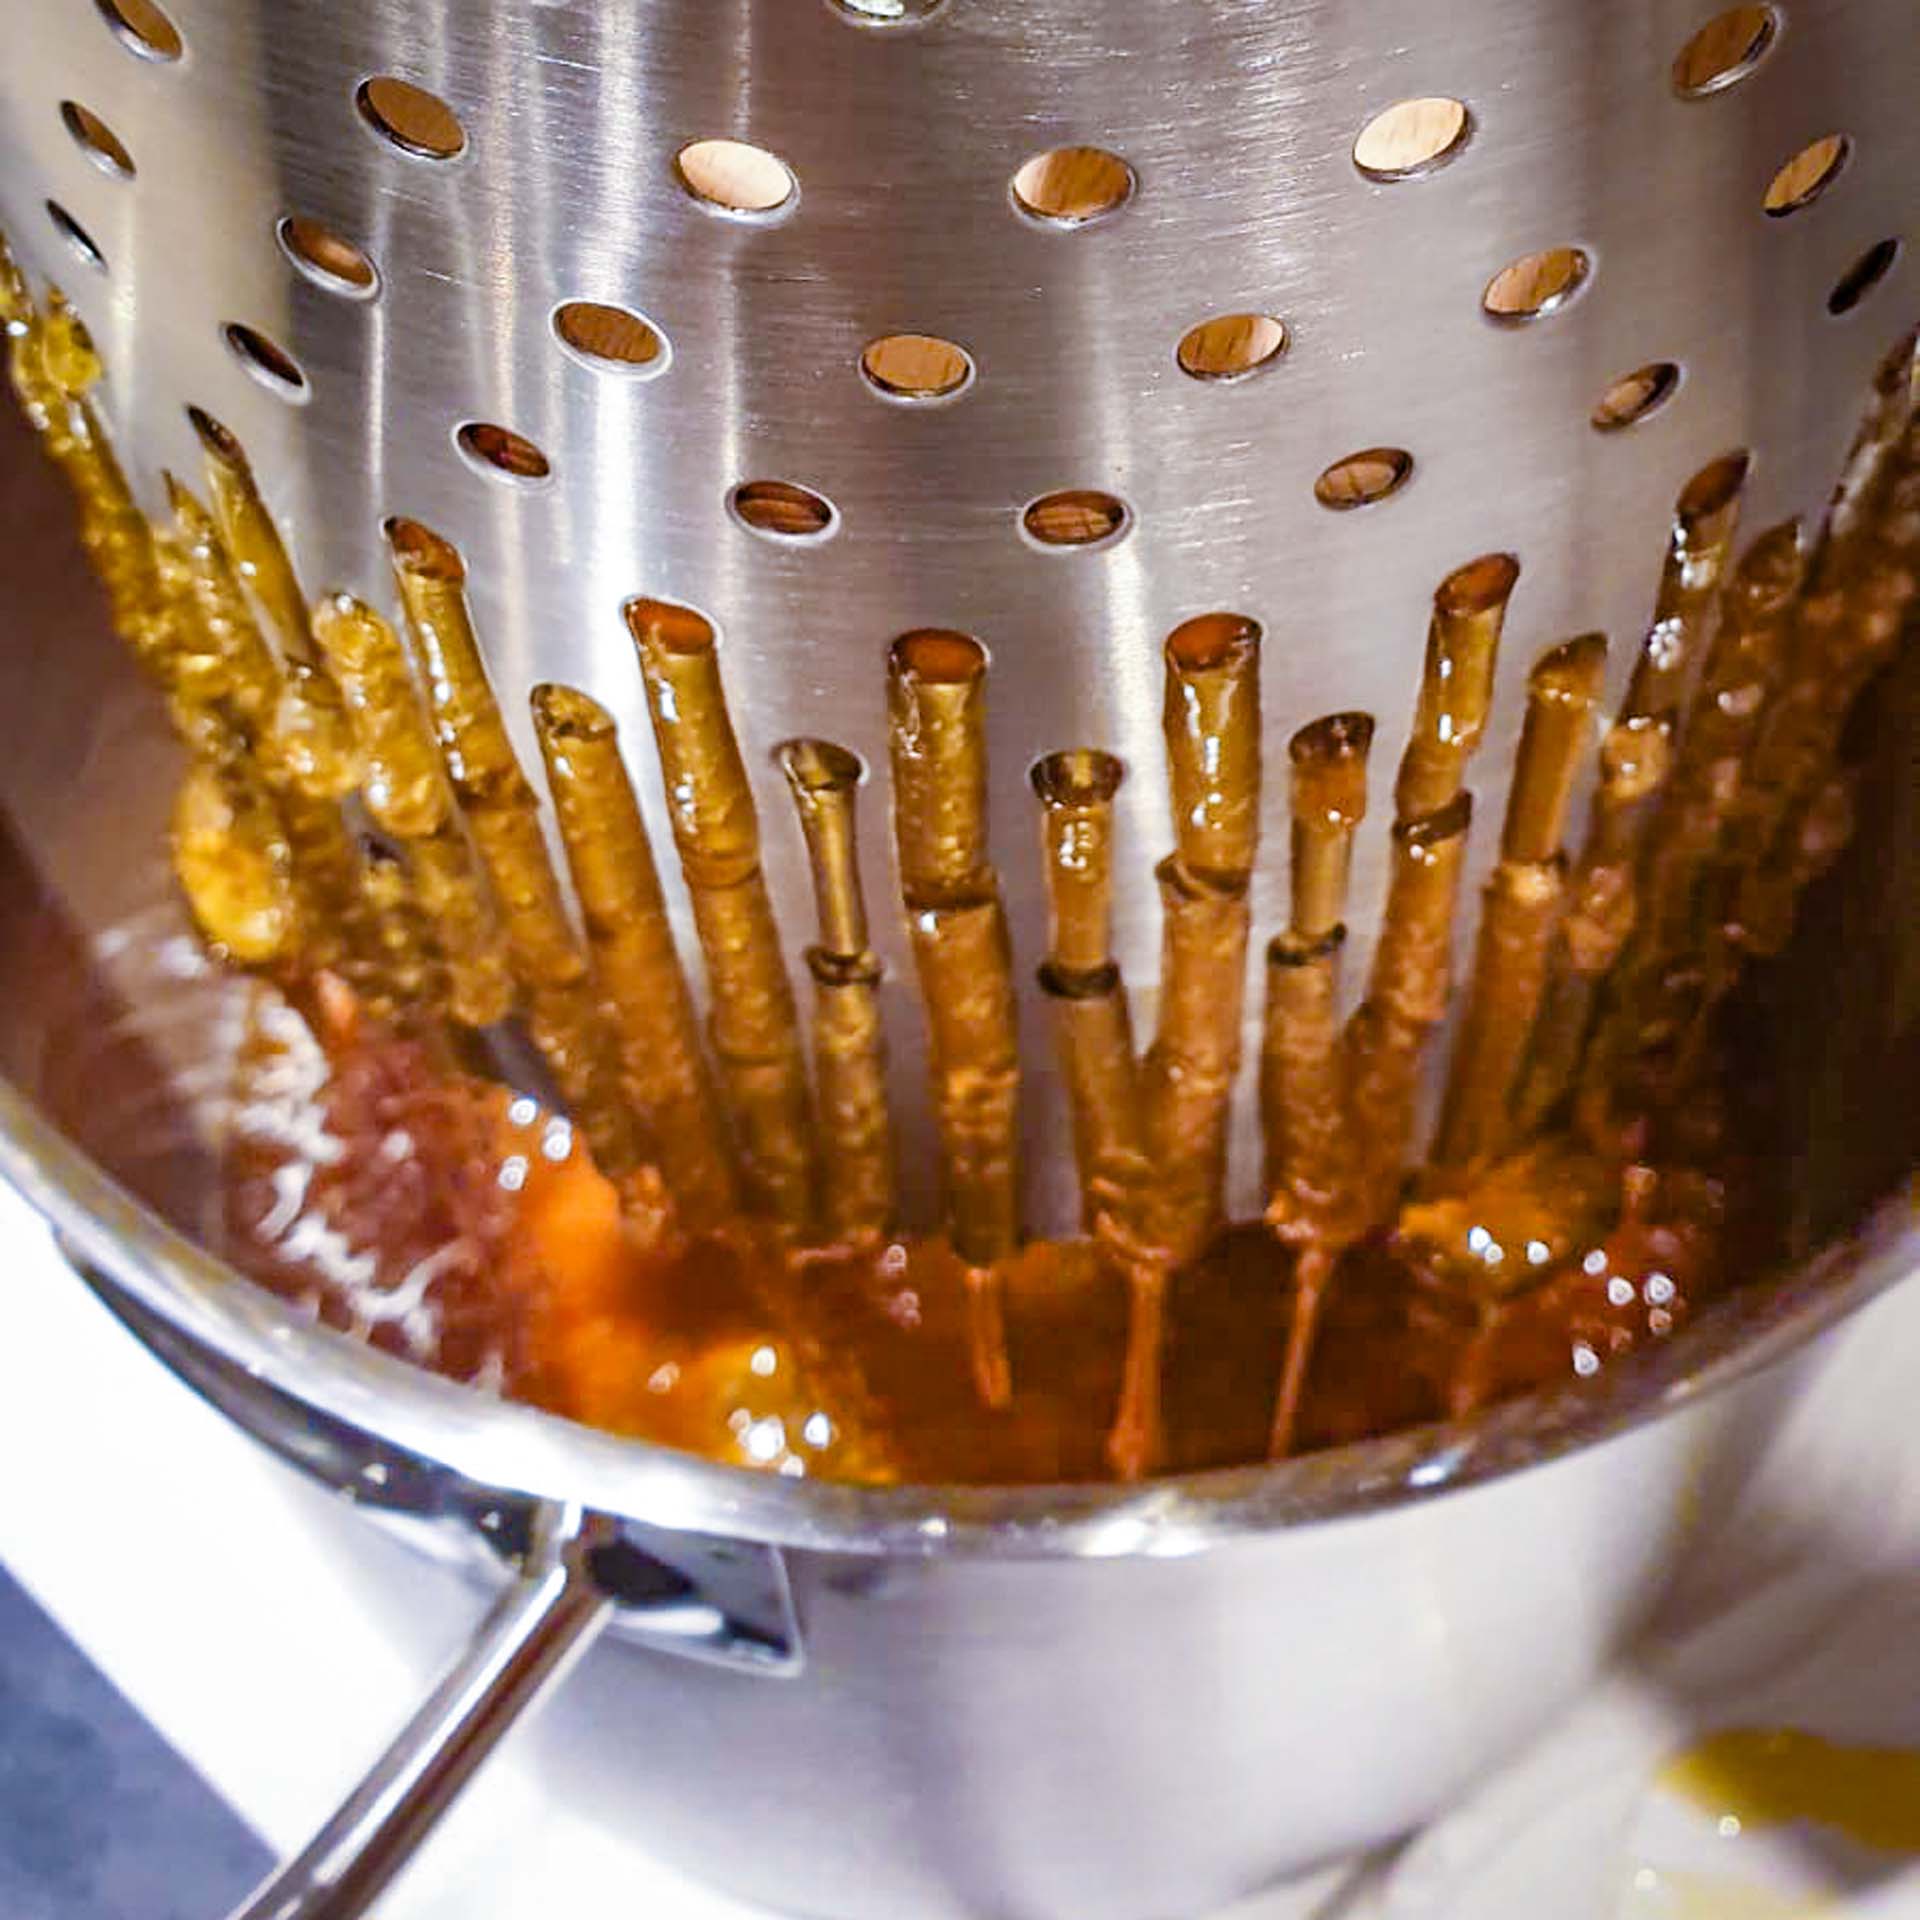 Honig wird aus den Waben ausgepresst